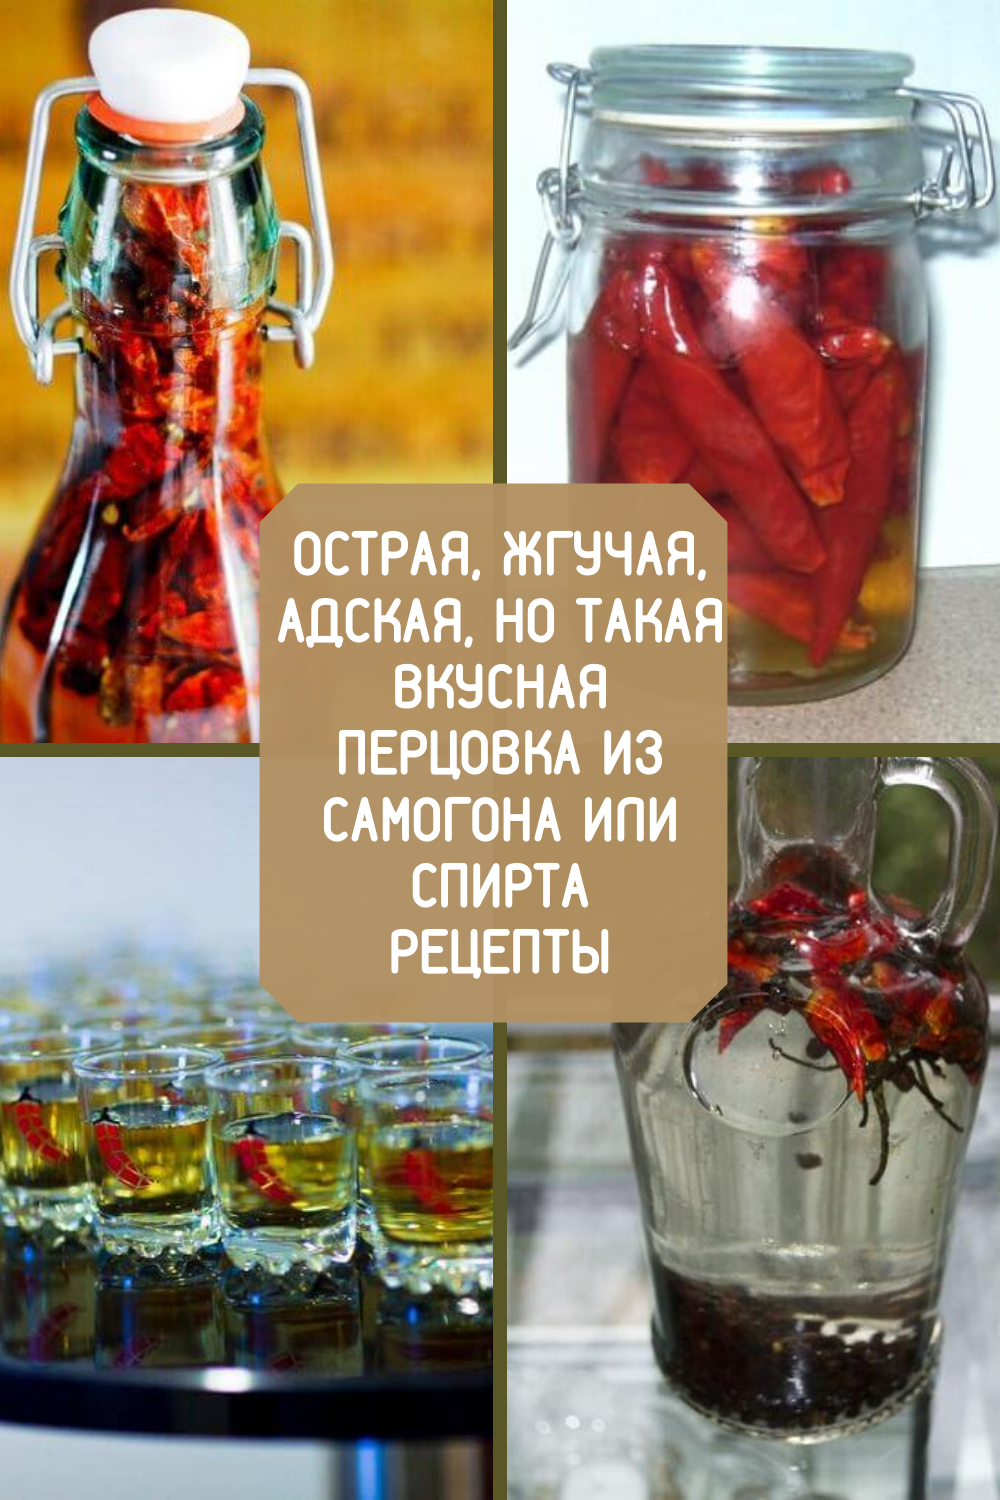 Перцовка на спирту в домашних условиях. рецепт с медом, кориандром